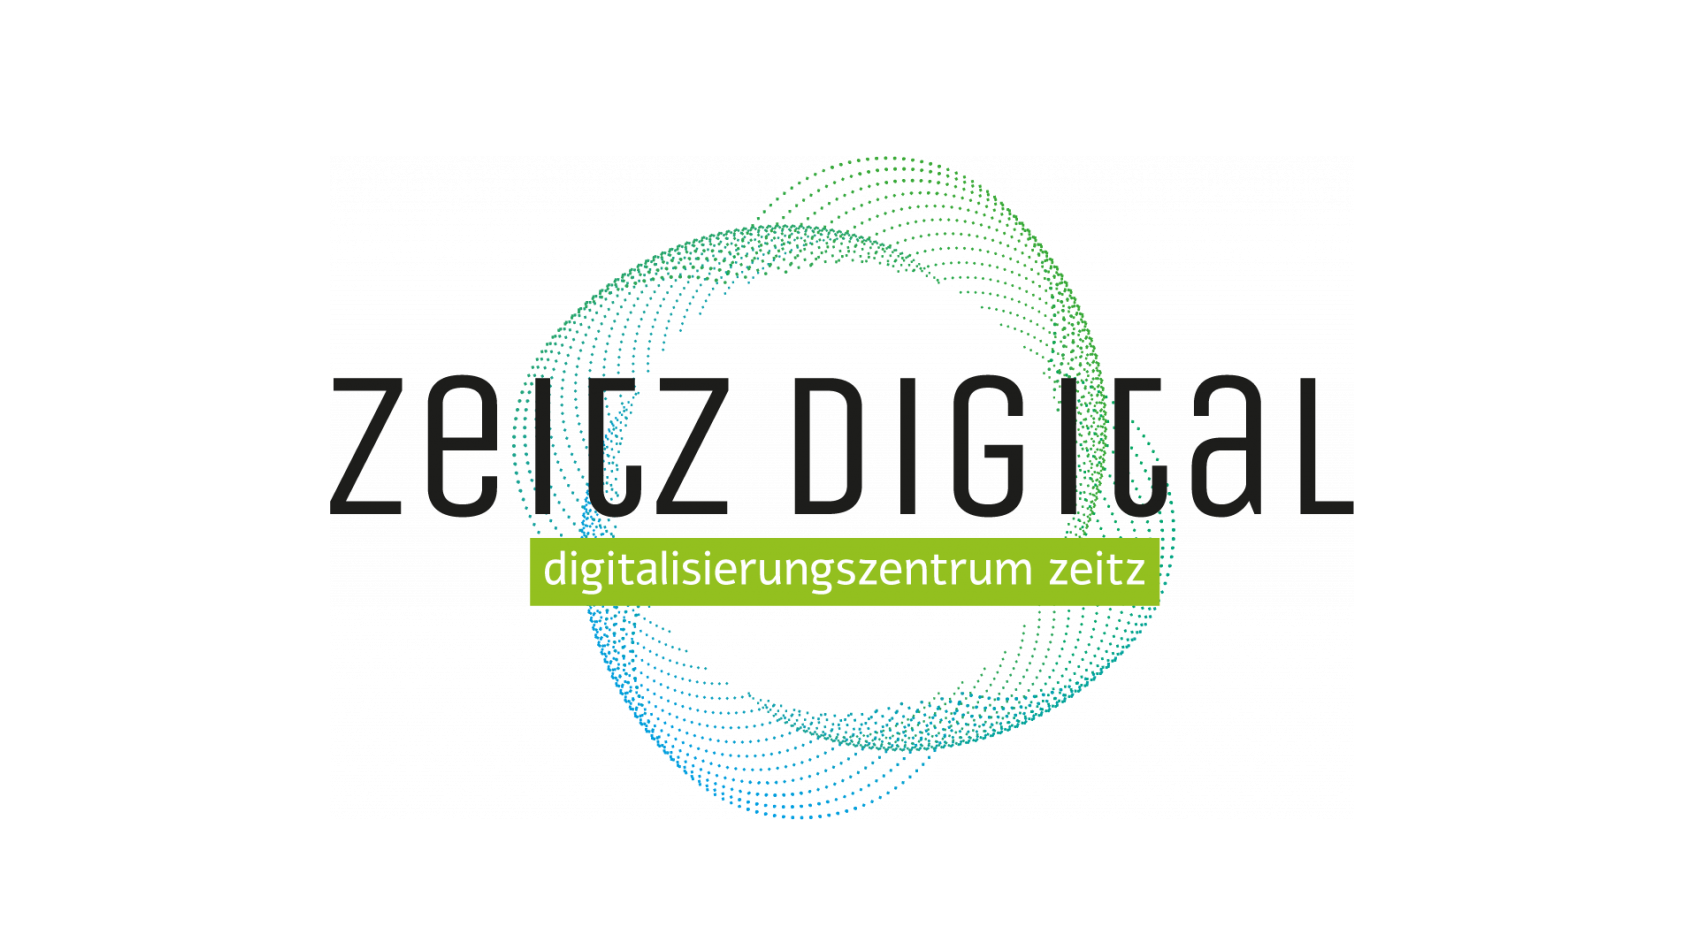 Digitalisierungszentrum Zeitz (DZZ)